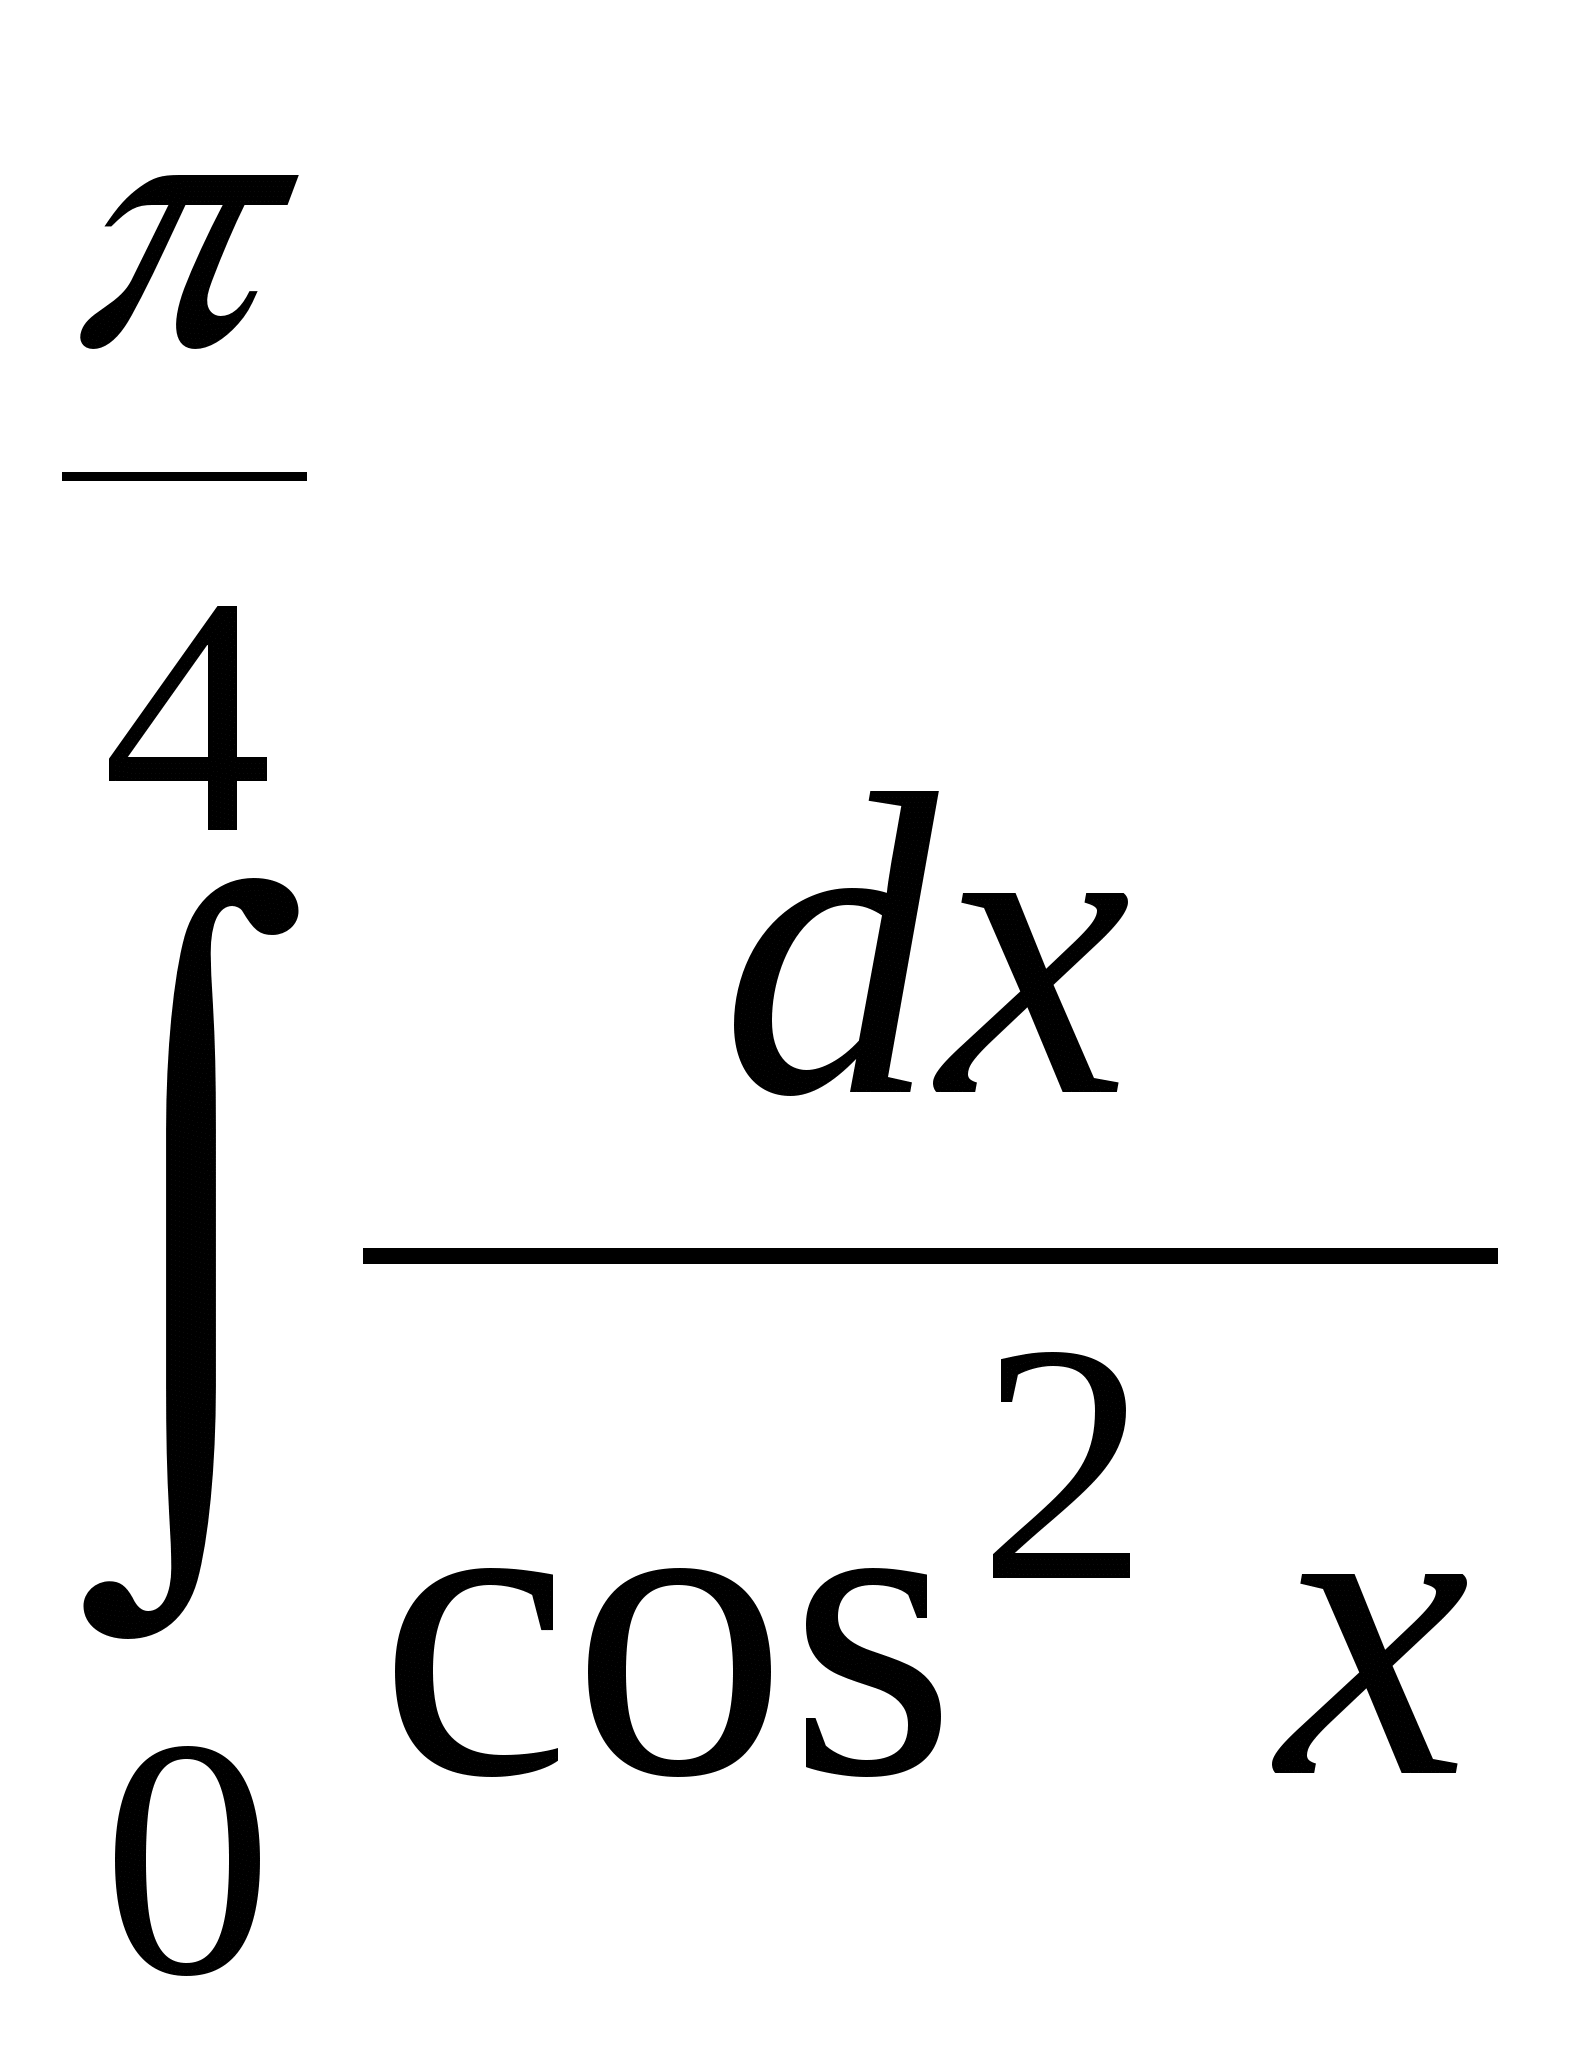 Решение задач на применение определенного интеграла (11 класс)